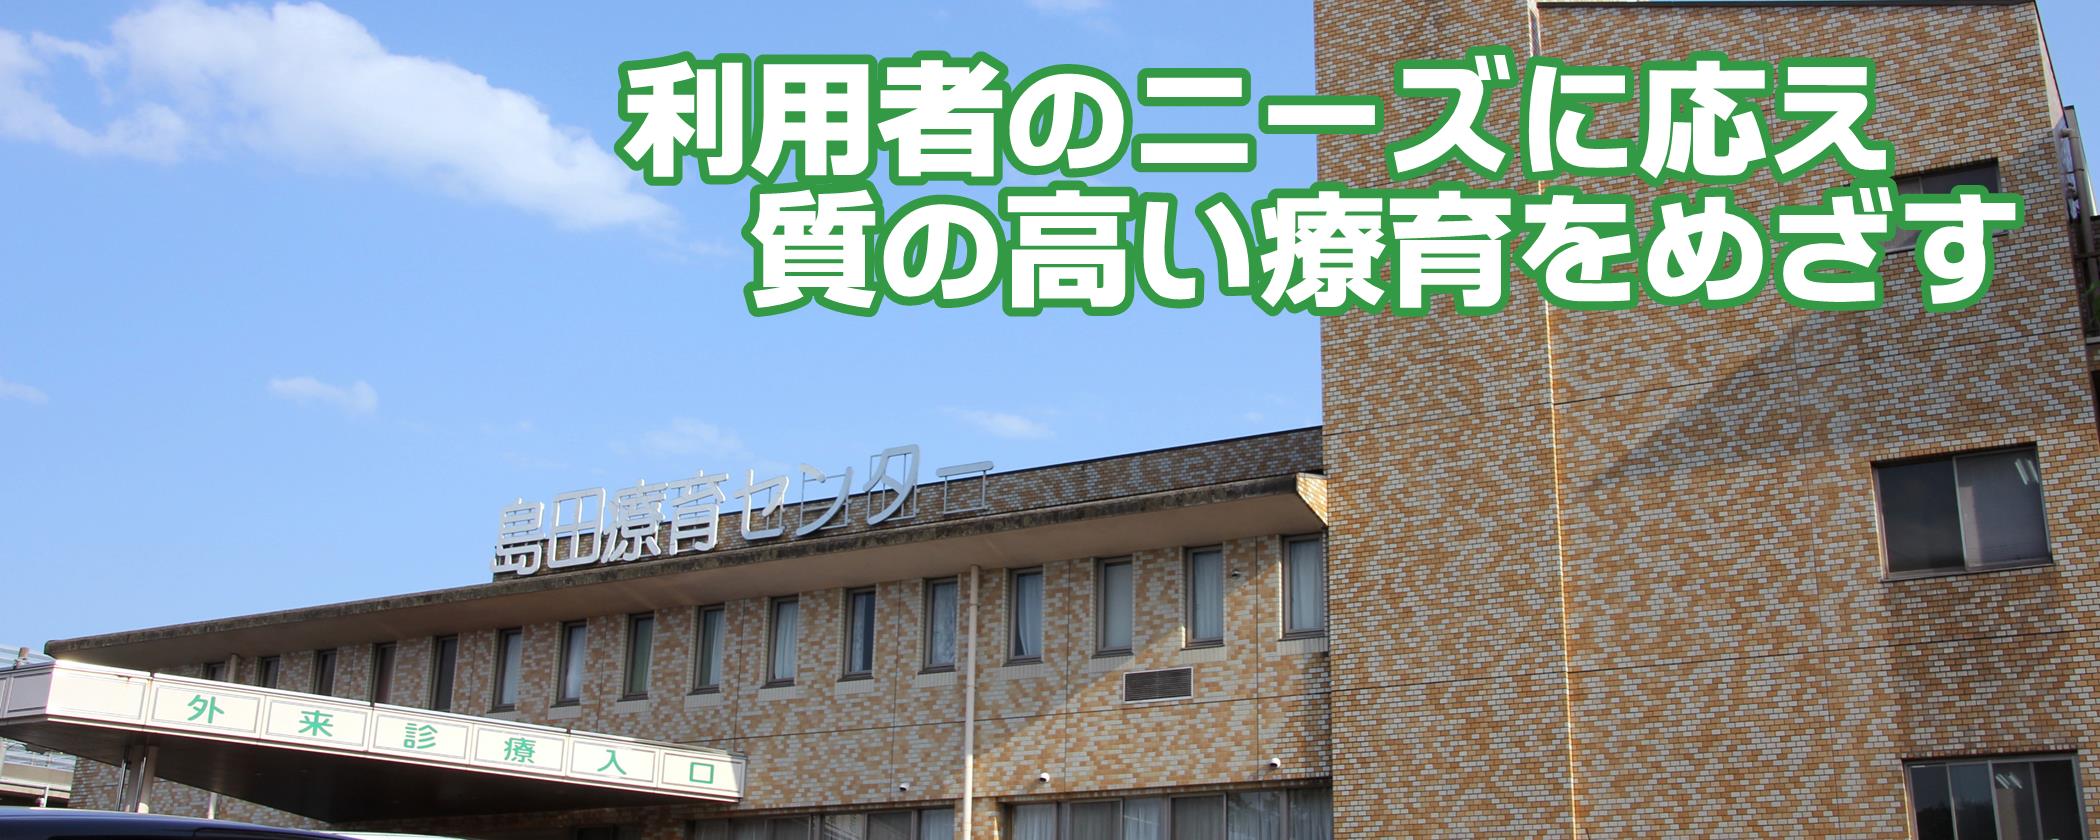 島田療育センター | 多摩地域の発達障害をはじめとする障害児の療育 | 日本で最初の重症心身障害児（者）入所施設